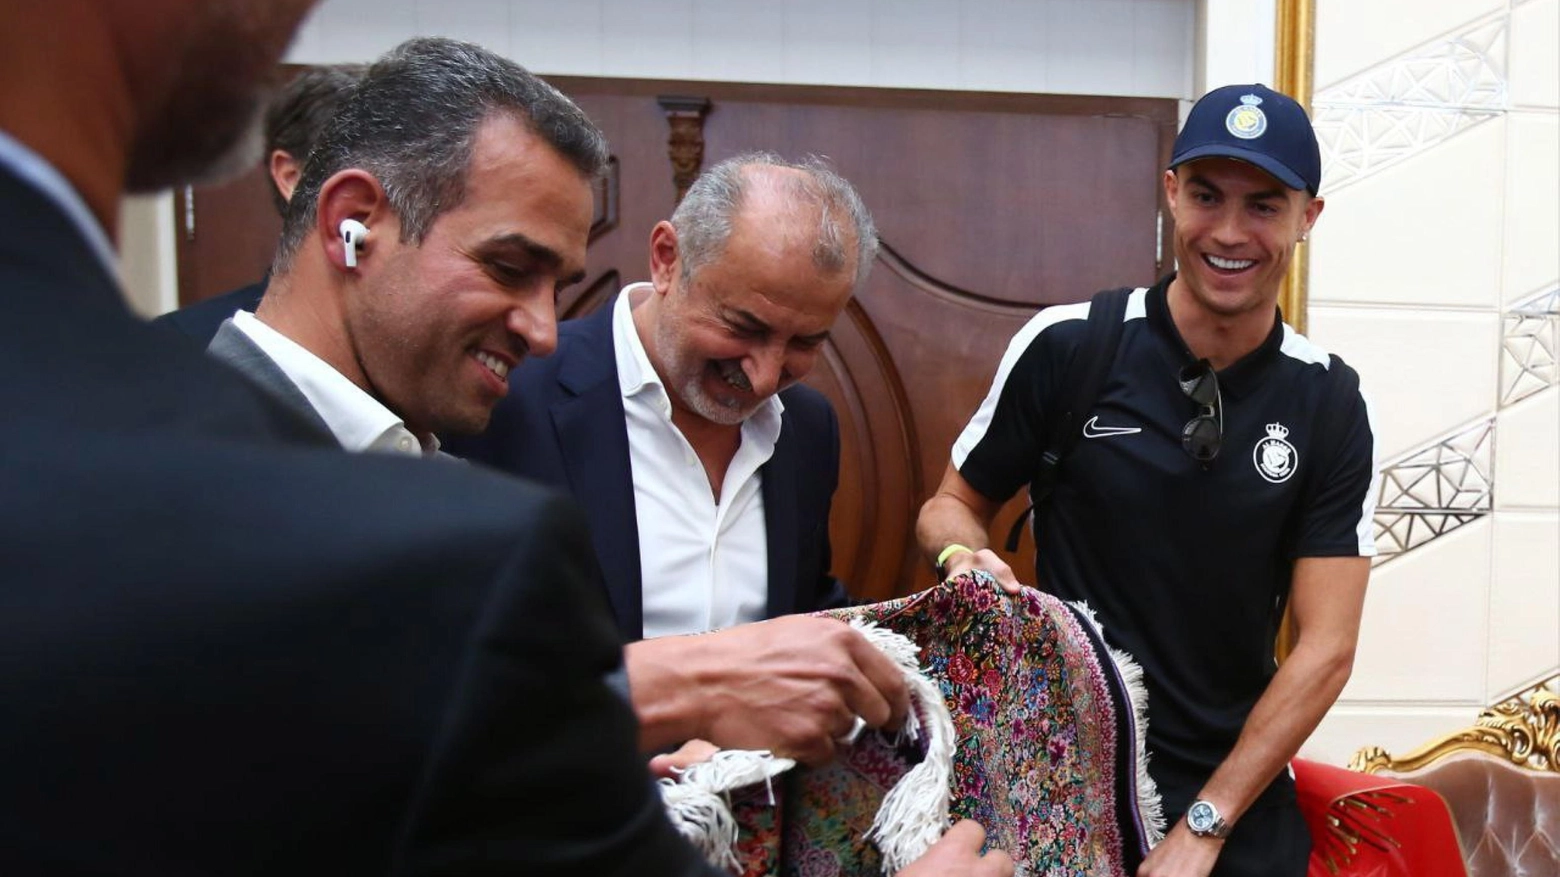 Cristiano Ronaldo con il tappeto donatogli dalla dirigenza del Persepolis